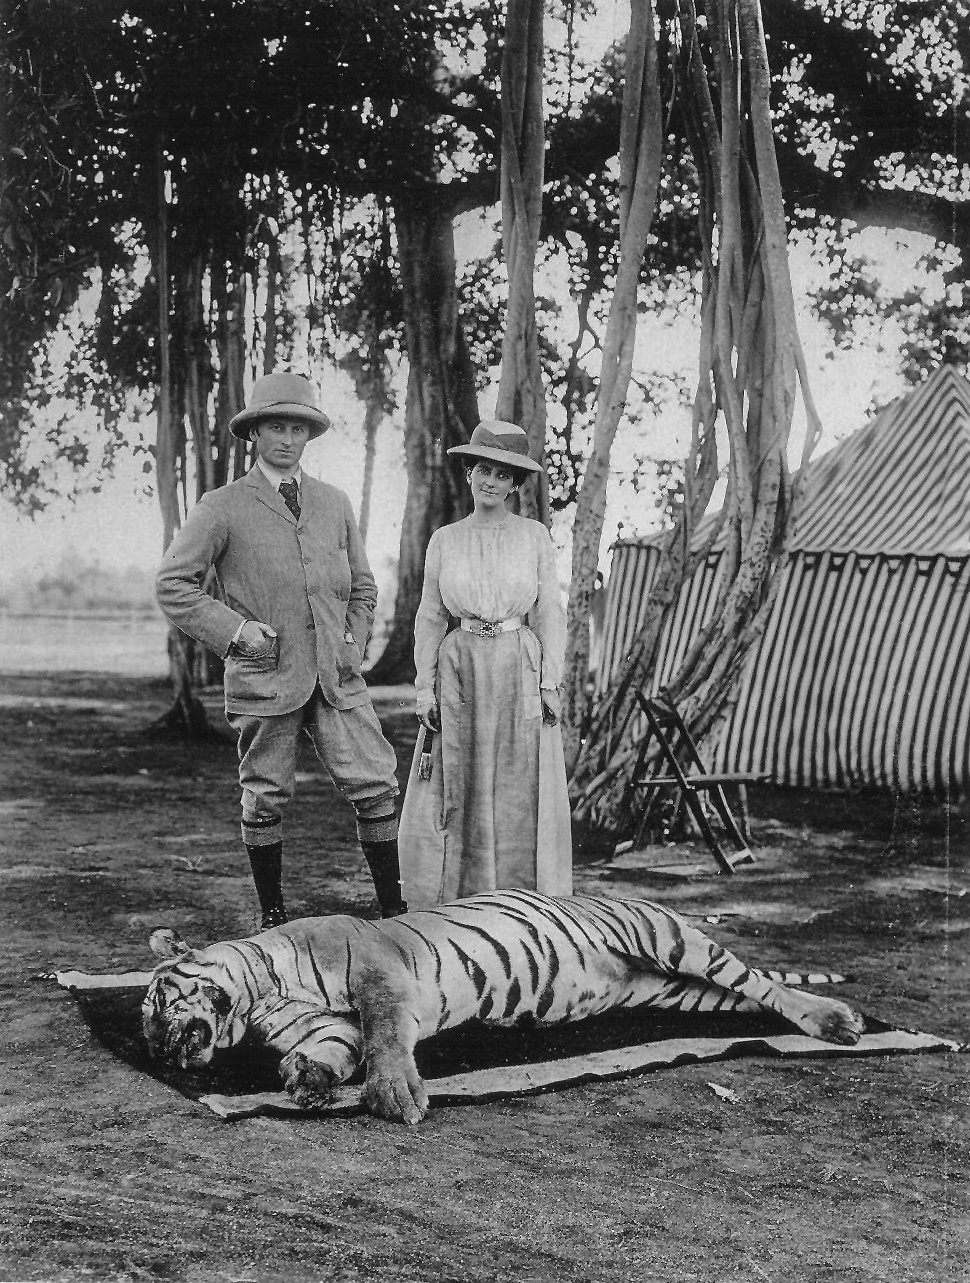 صورة تذكارية لحاكم الهند اللورد جورج كورزن وزوجته مع جثة النمر البنغالي ضحية الصيد، عام 1903